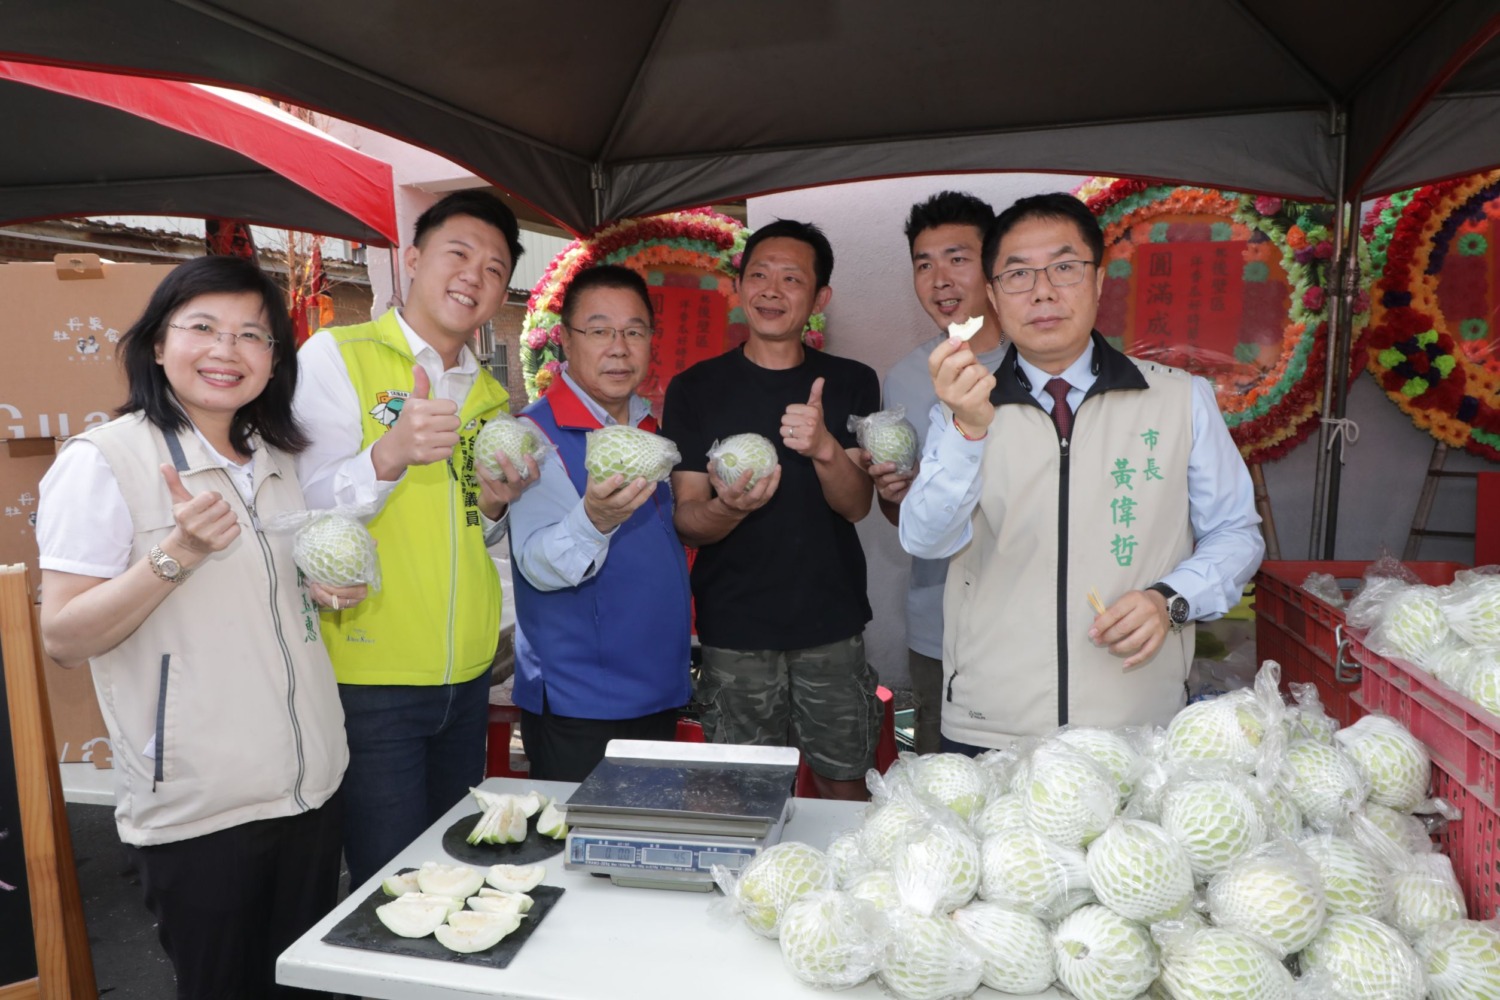 後壁區栽培洋香瓜產量全國第一   黃偉哲邀請民眾品嚐